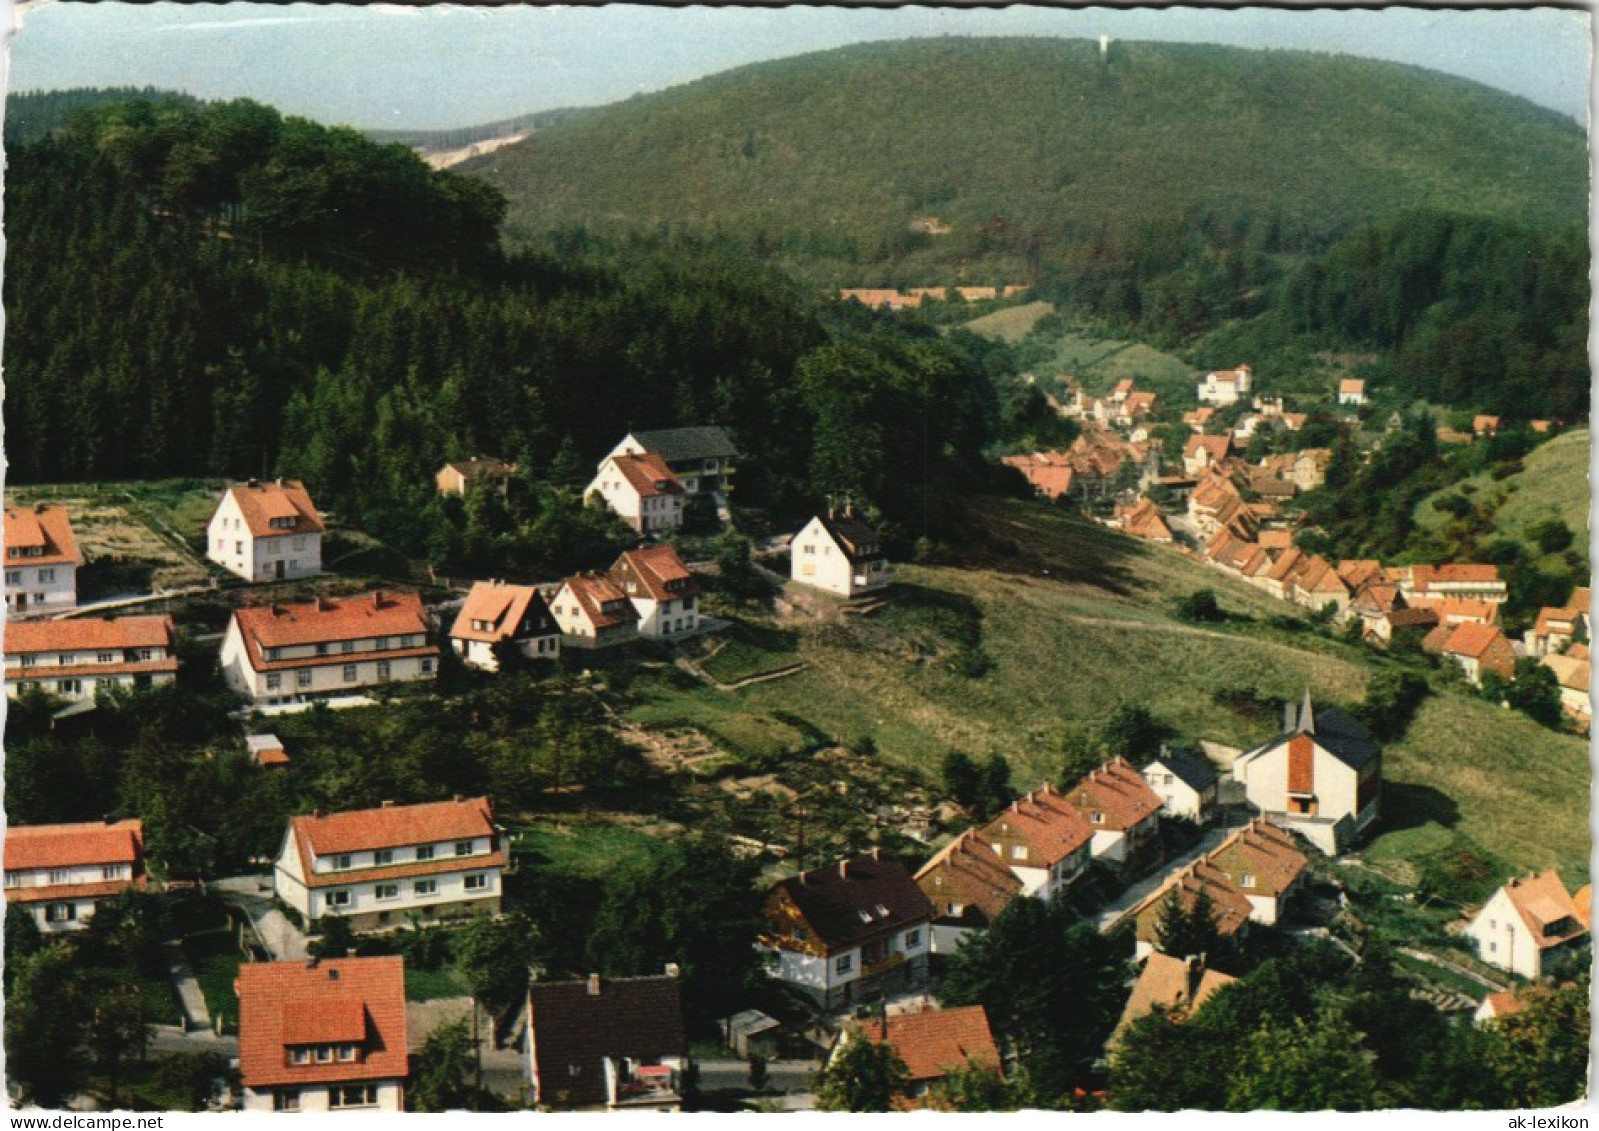 Ansichtskarte Bad Grund (Harz) Blick Vom Knollen Panorama-Ansicht 1967 - Bad Grund